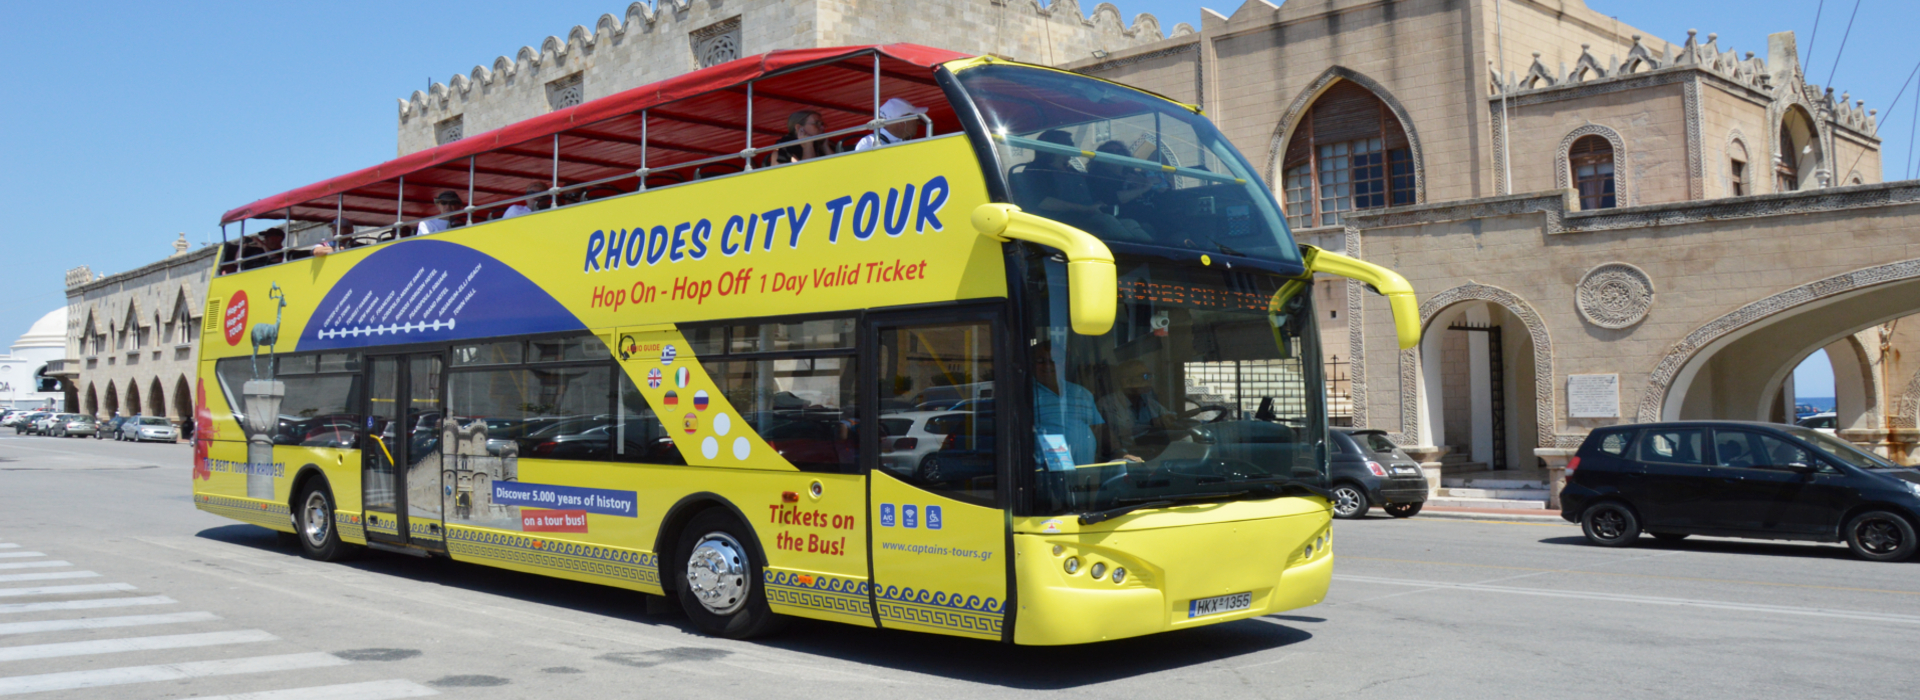 Visite de la ville de Rhodes avec OpenBus de Captains Tours